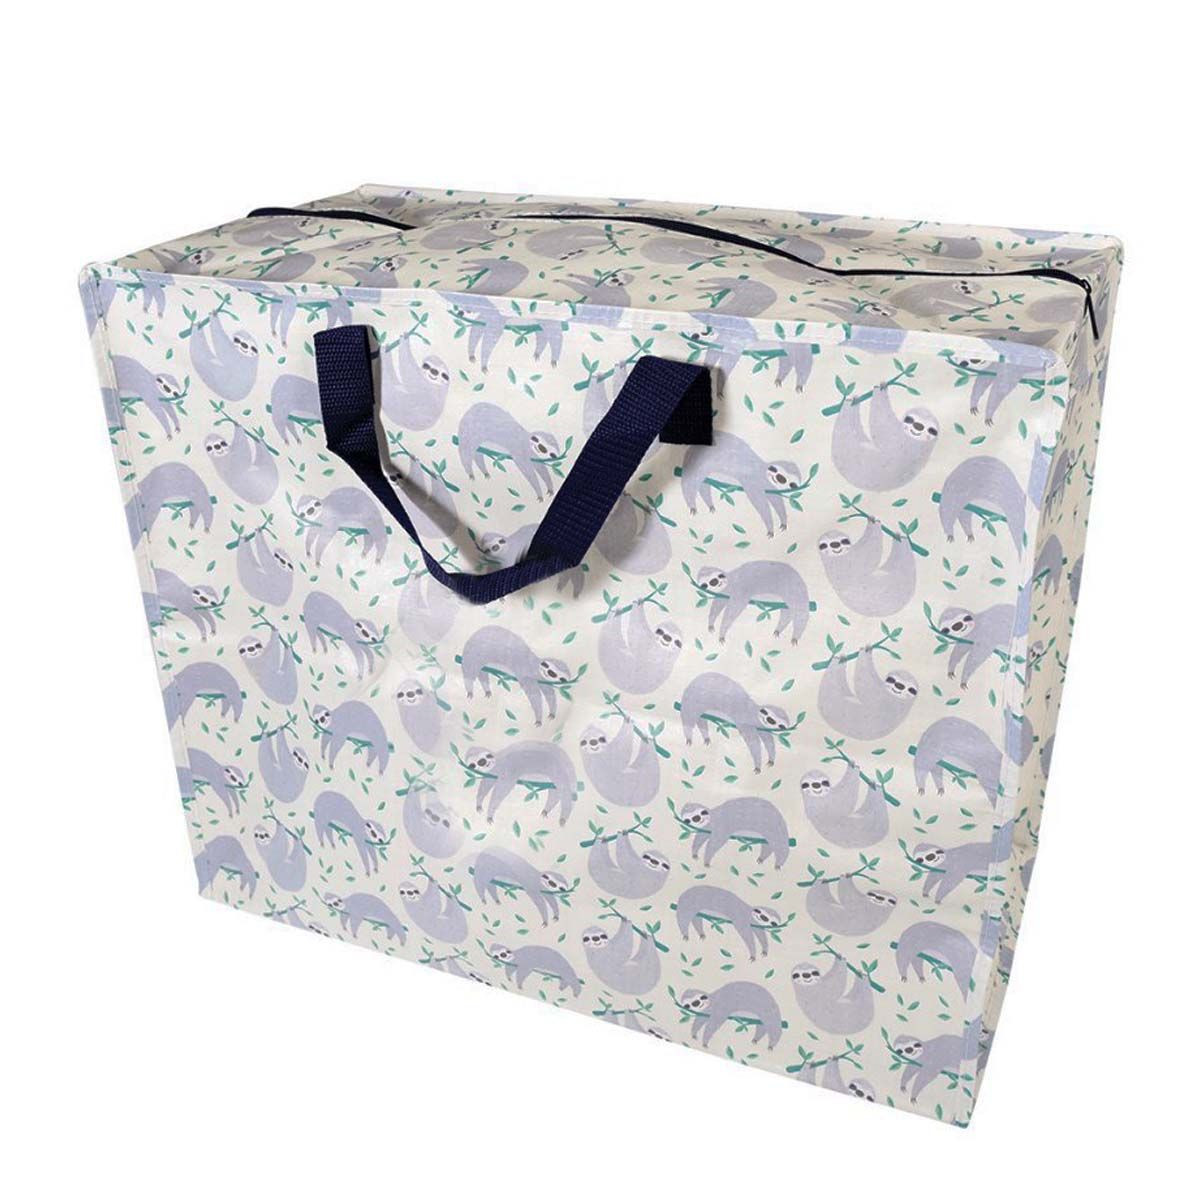 couvertures couettes COSANSYS Lot de 2 grands sacs de rangement sous le lit avec fermeture éclair couettes boîte de rangement pour couettes avec fenêtre transparente pour vêtements literie 